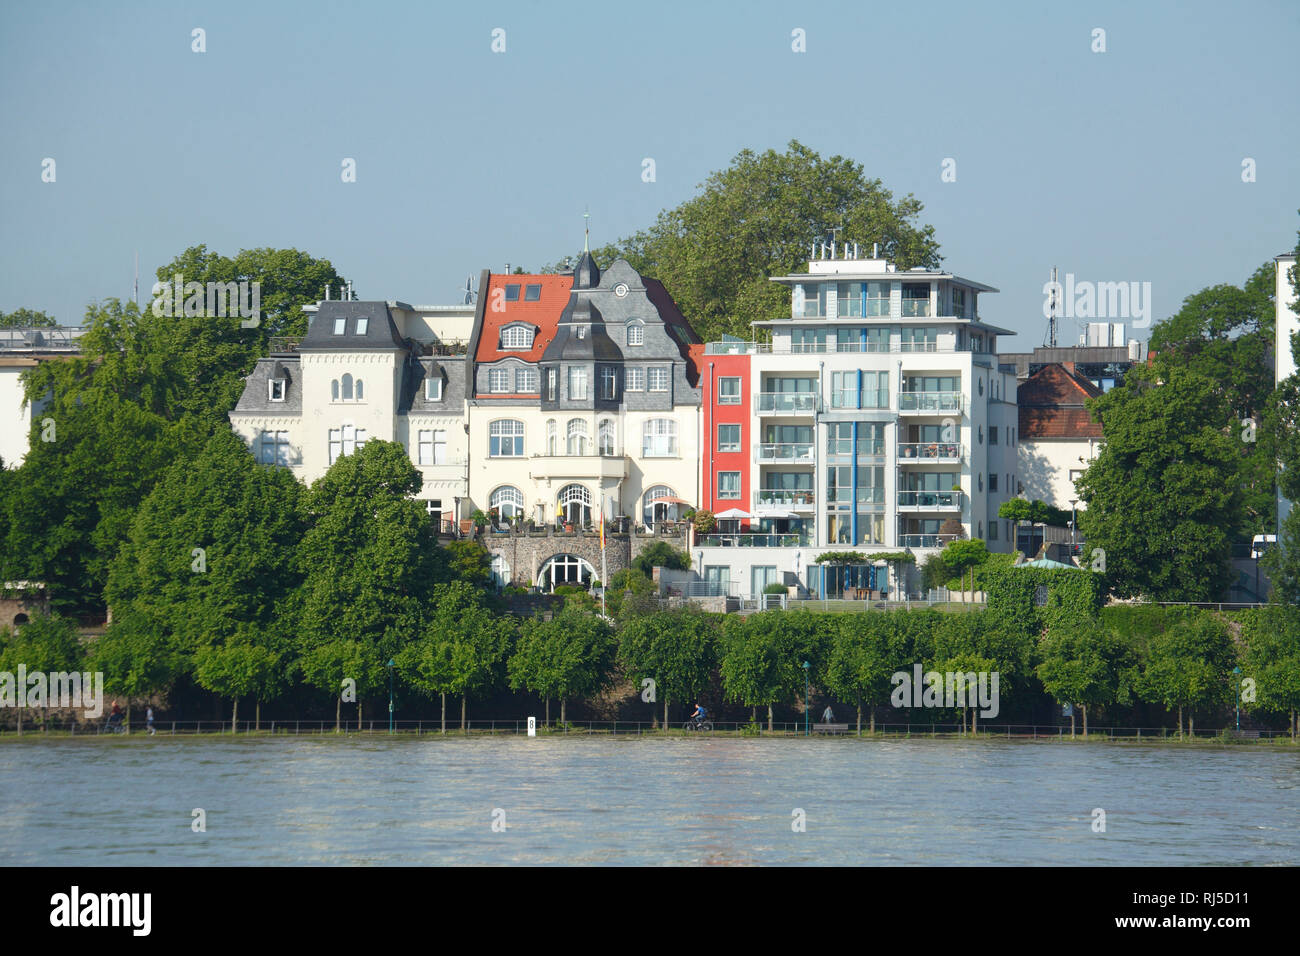 Alte und Moderne Häuser, Rheinufer, Rhein, Bonn, Nordrhein-Westfalen, Deutschland, Europa Stock Photo